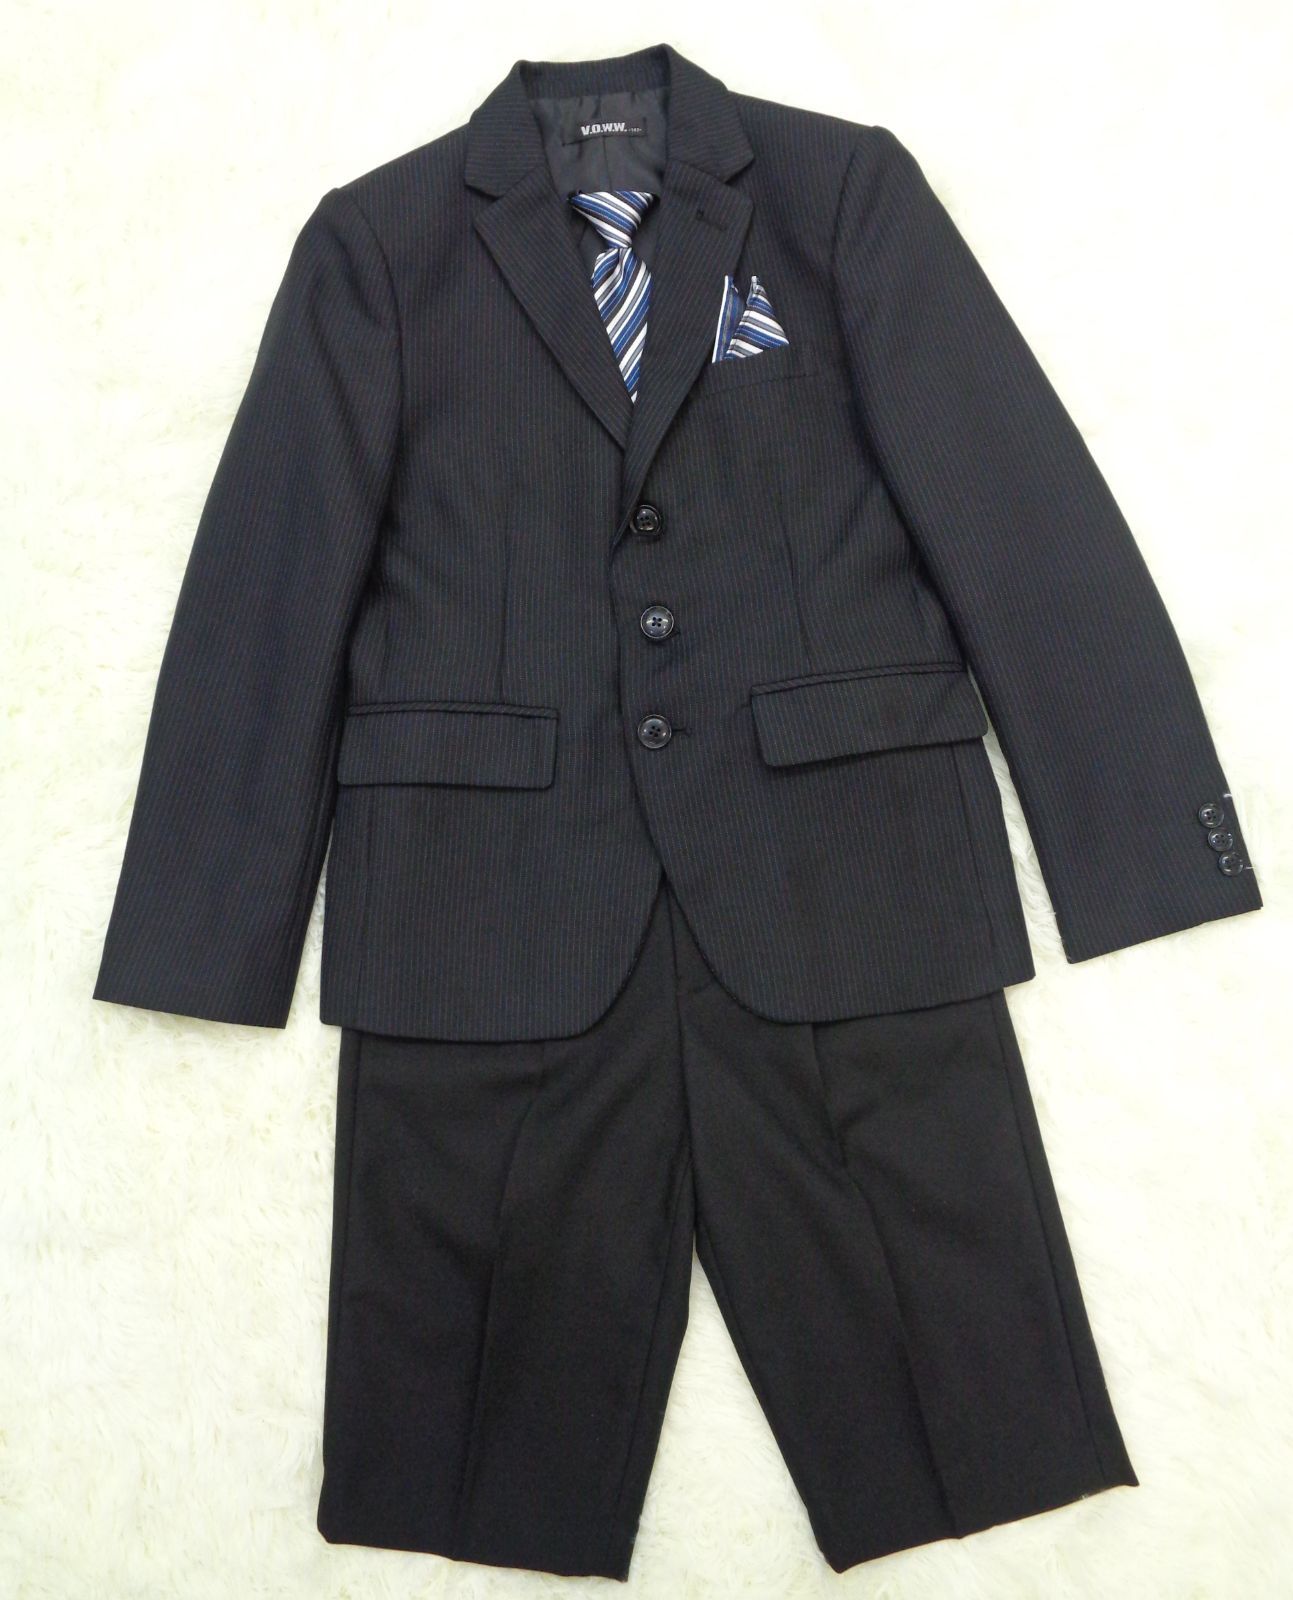 ◇入学◇ V.O.W.W 男の子 フォーマルスーツ - フォーマル・ドレス・スーツ